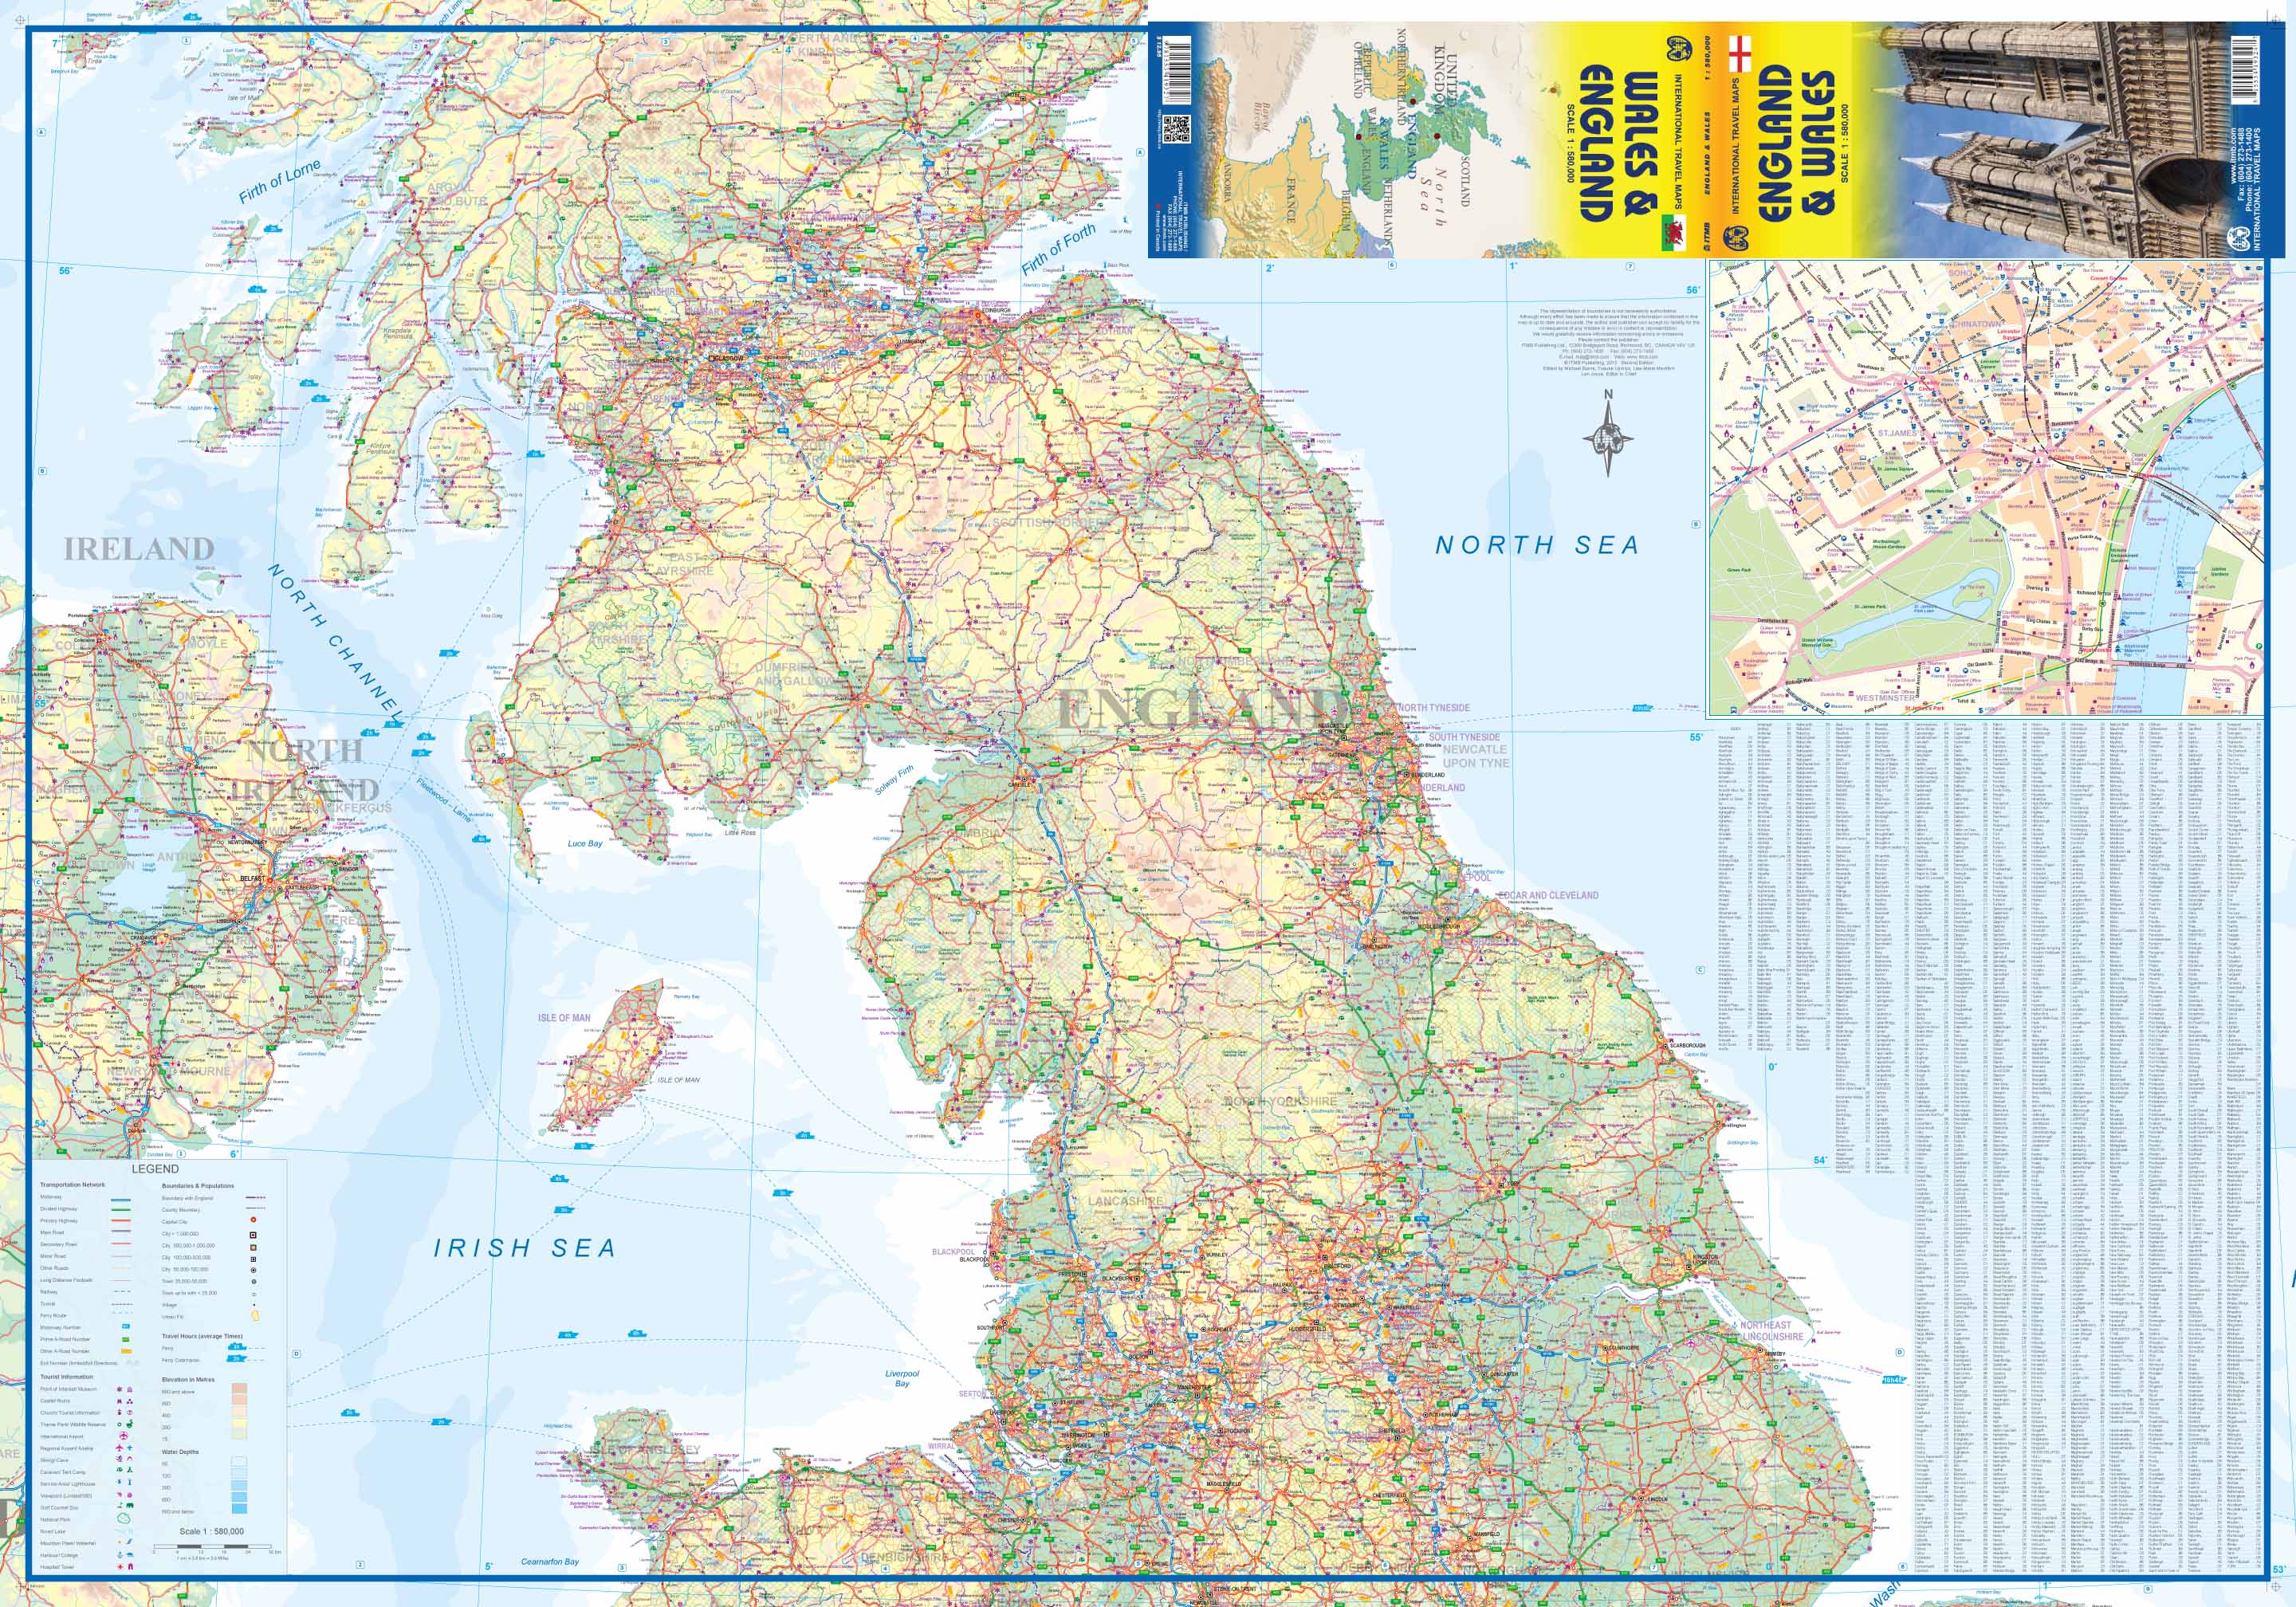 Wegenkaart - landkaart England & Wales - Engeland | ITMB ...